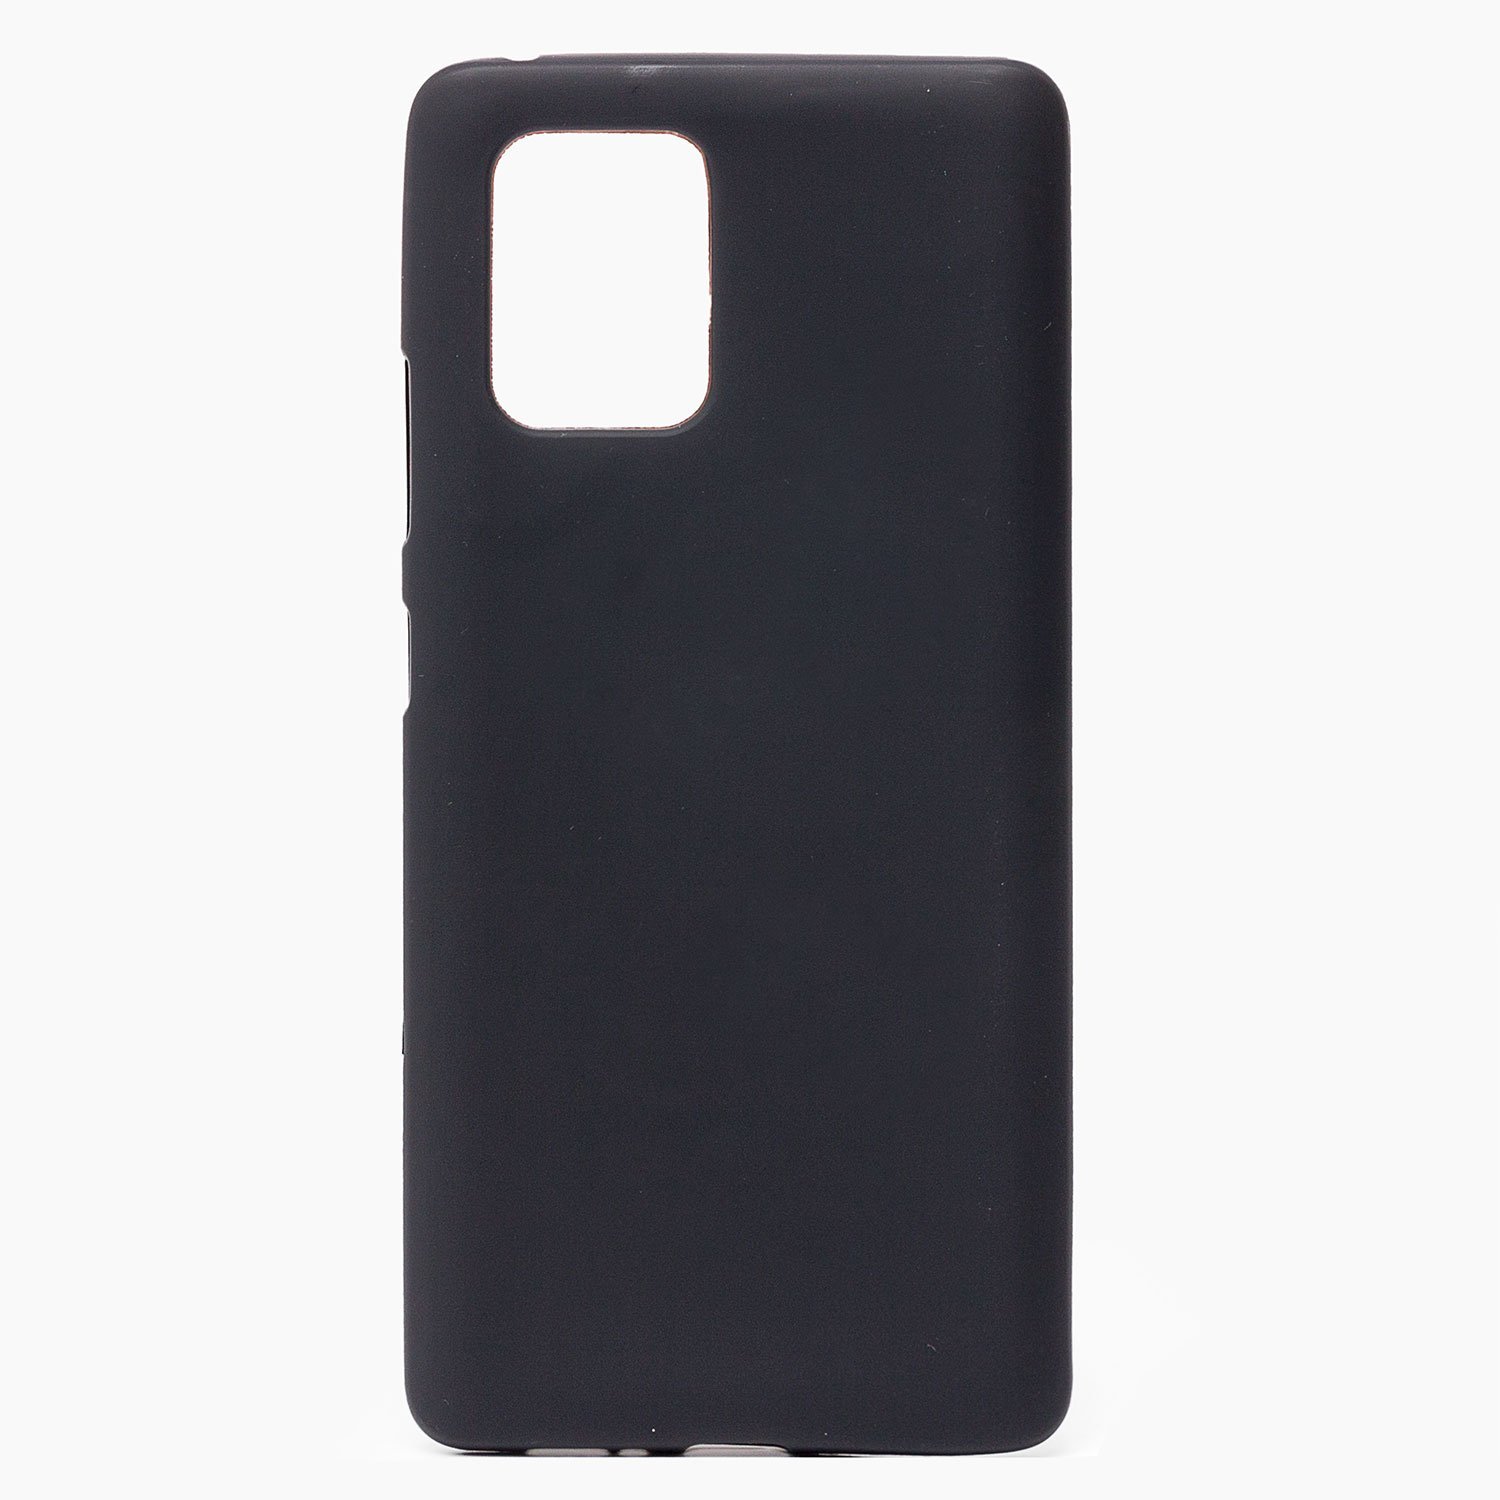 Чехол-накладка Activ Mate для смартфона Samsung SM-G973 Galaxy S10 Lite, силикон, черный (116030)